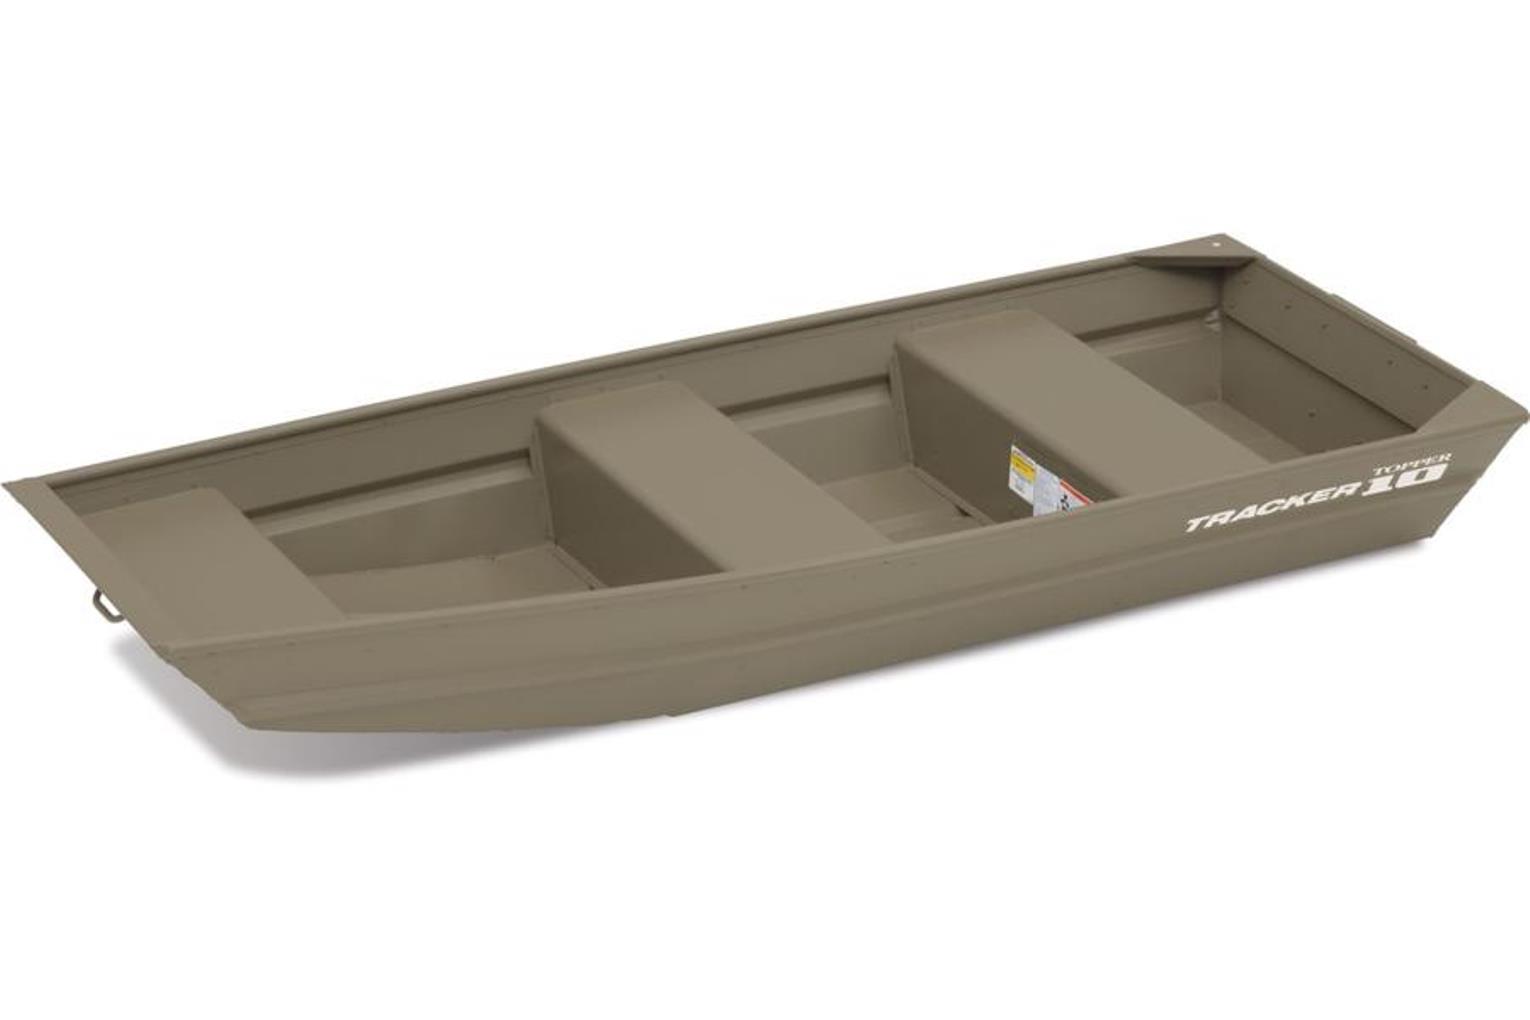 Tracker Topper 1032 каталог купить модели яхты парусные моторные новые б/у ...